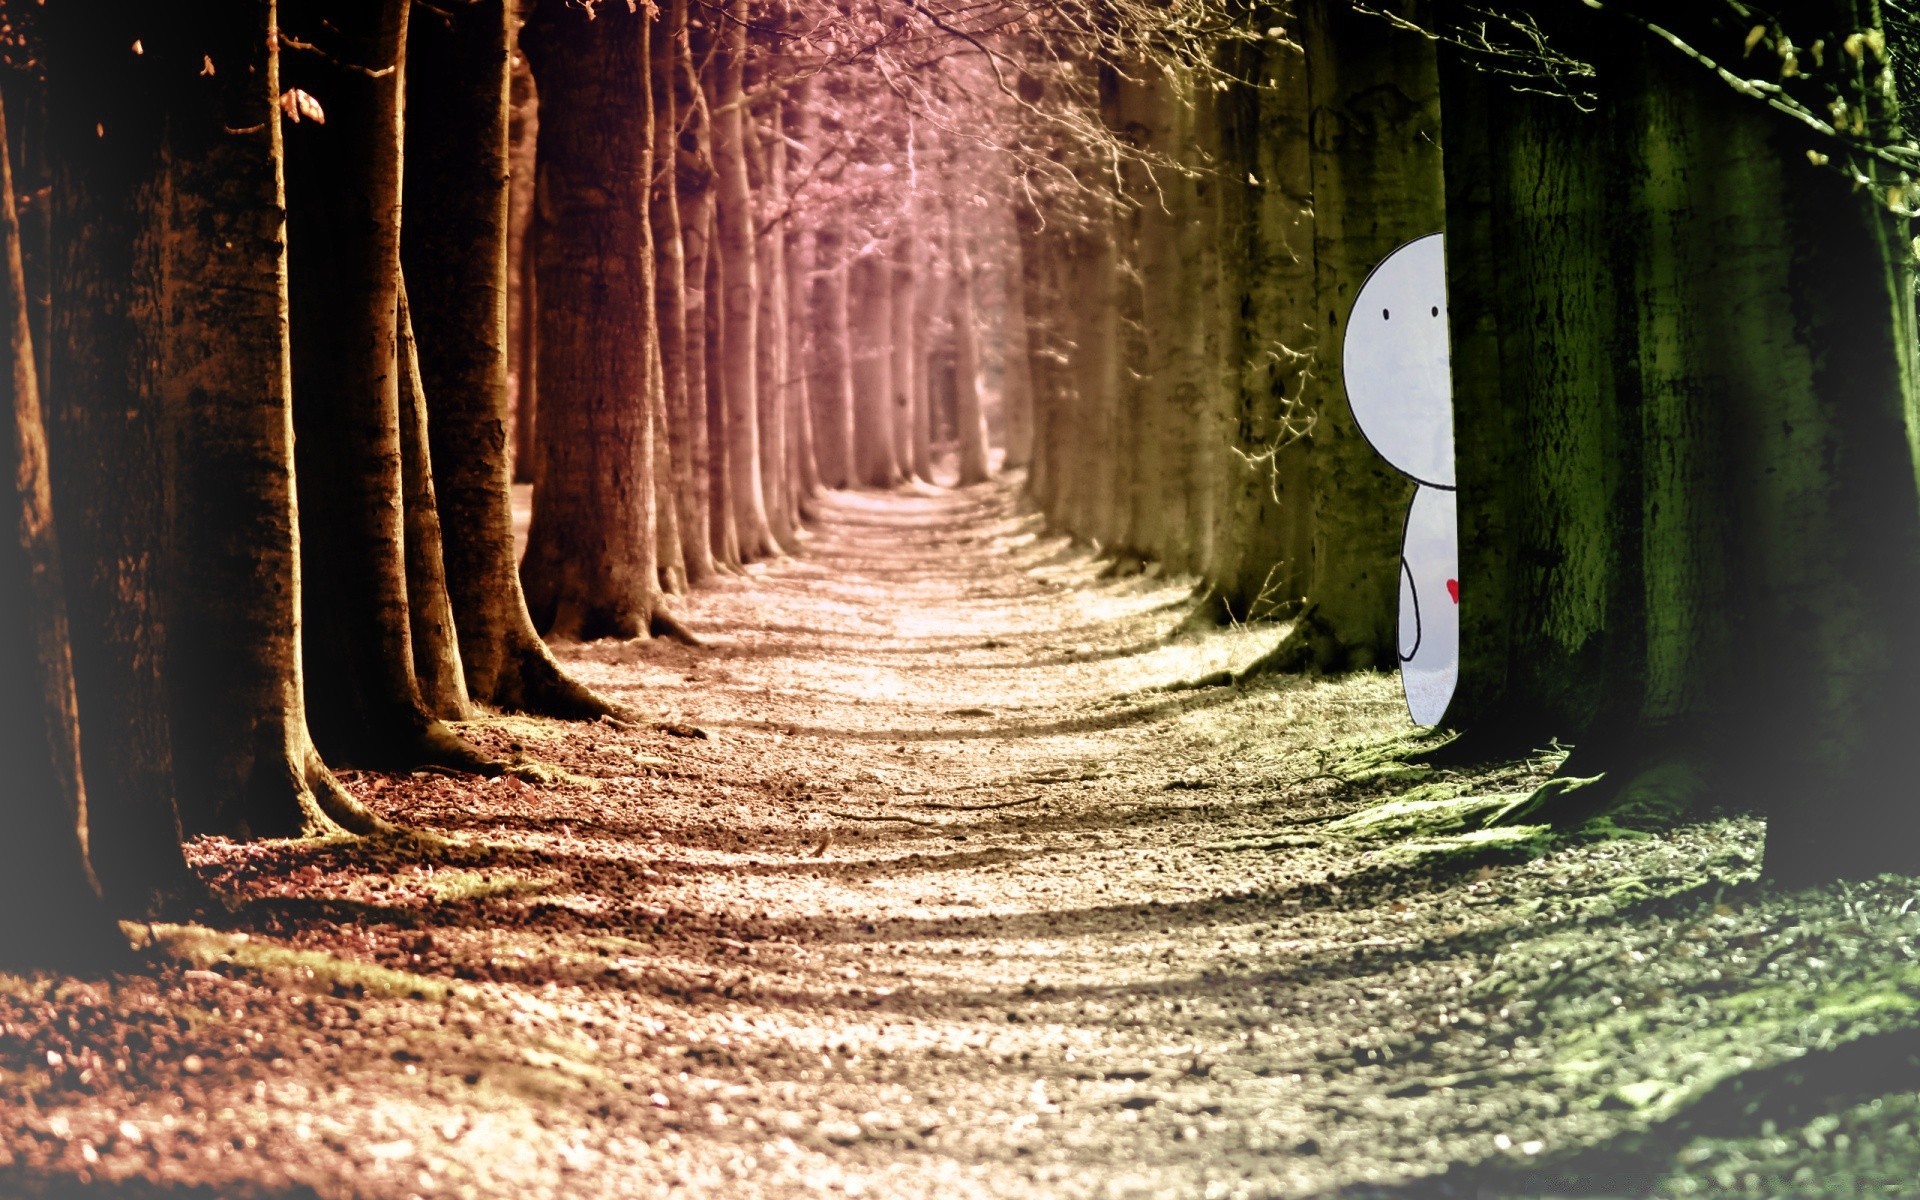 романтика древесины свет дерево руководство тоннель тайна тень природа парк пейзаж темный прогулка аллея лист